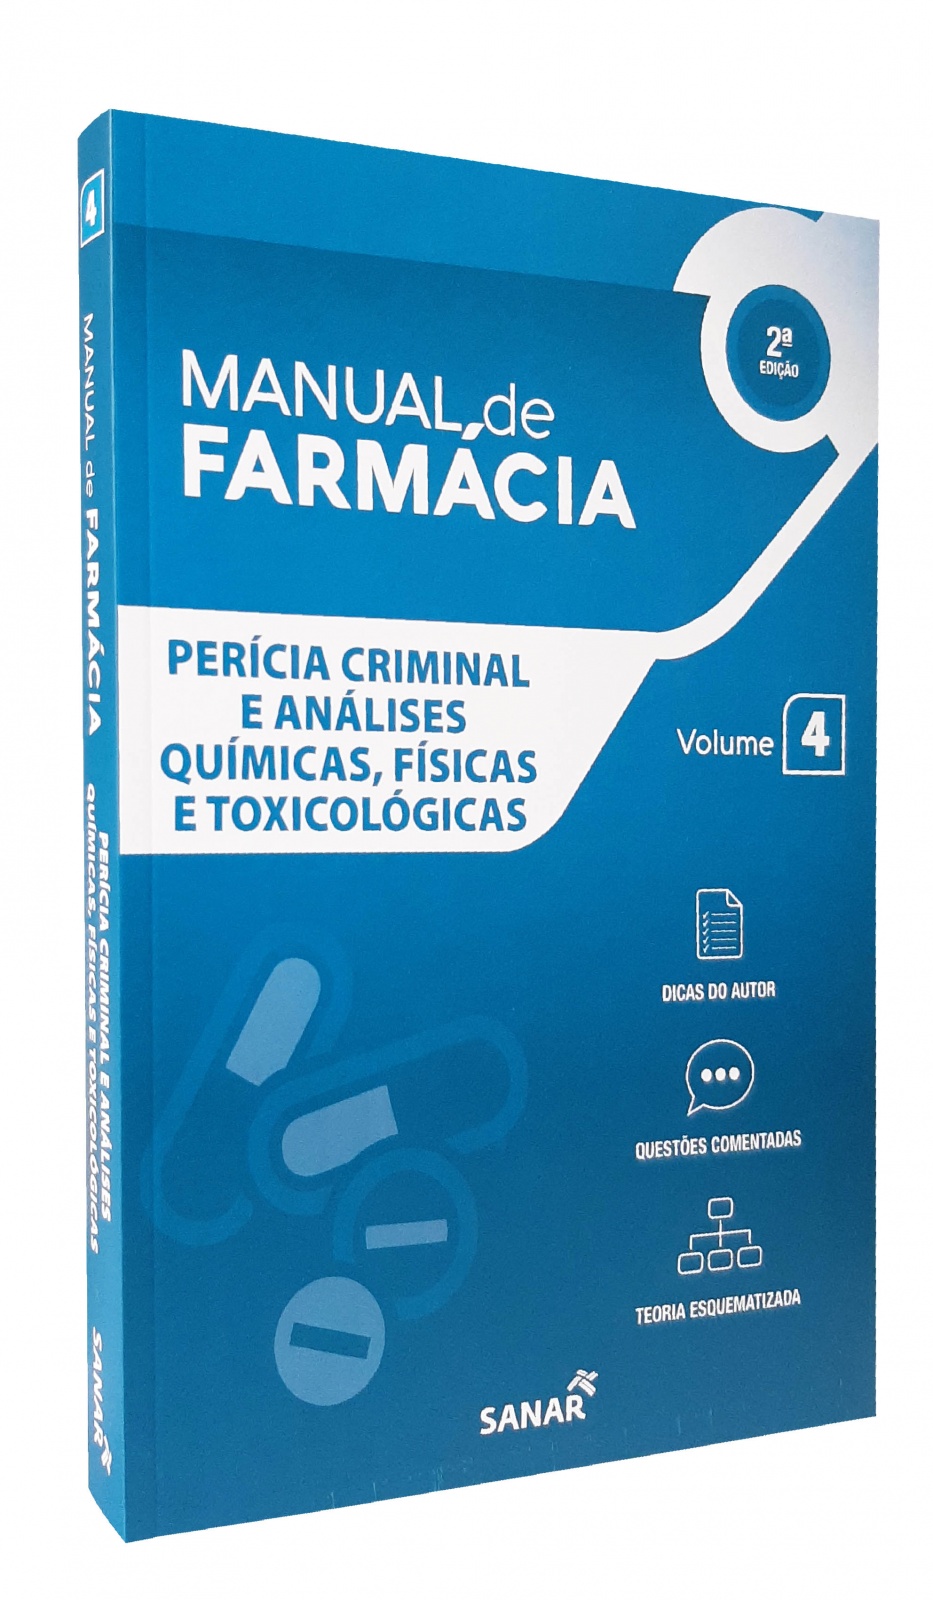 Manual De Farmácia - Perícia Criminal E Análises Químicas, Físicas E Toxicológicas - Vol. 4